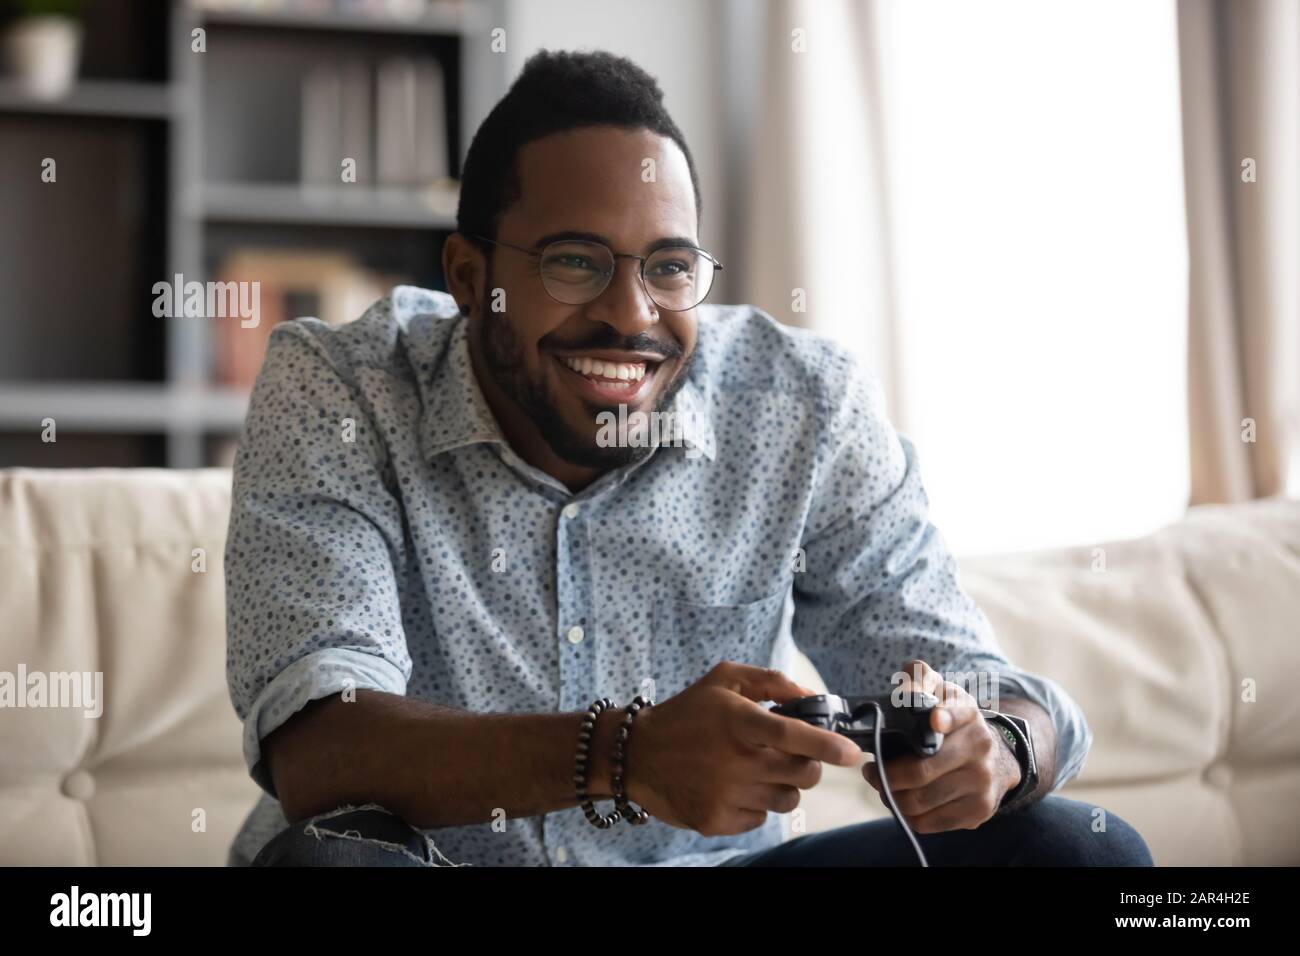 Feliz chico africano agarrando joystick de control de juego de vídeo Foto de stock